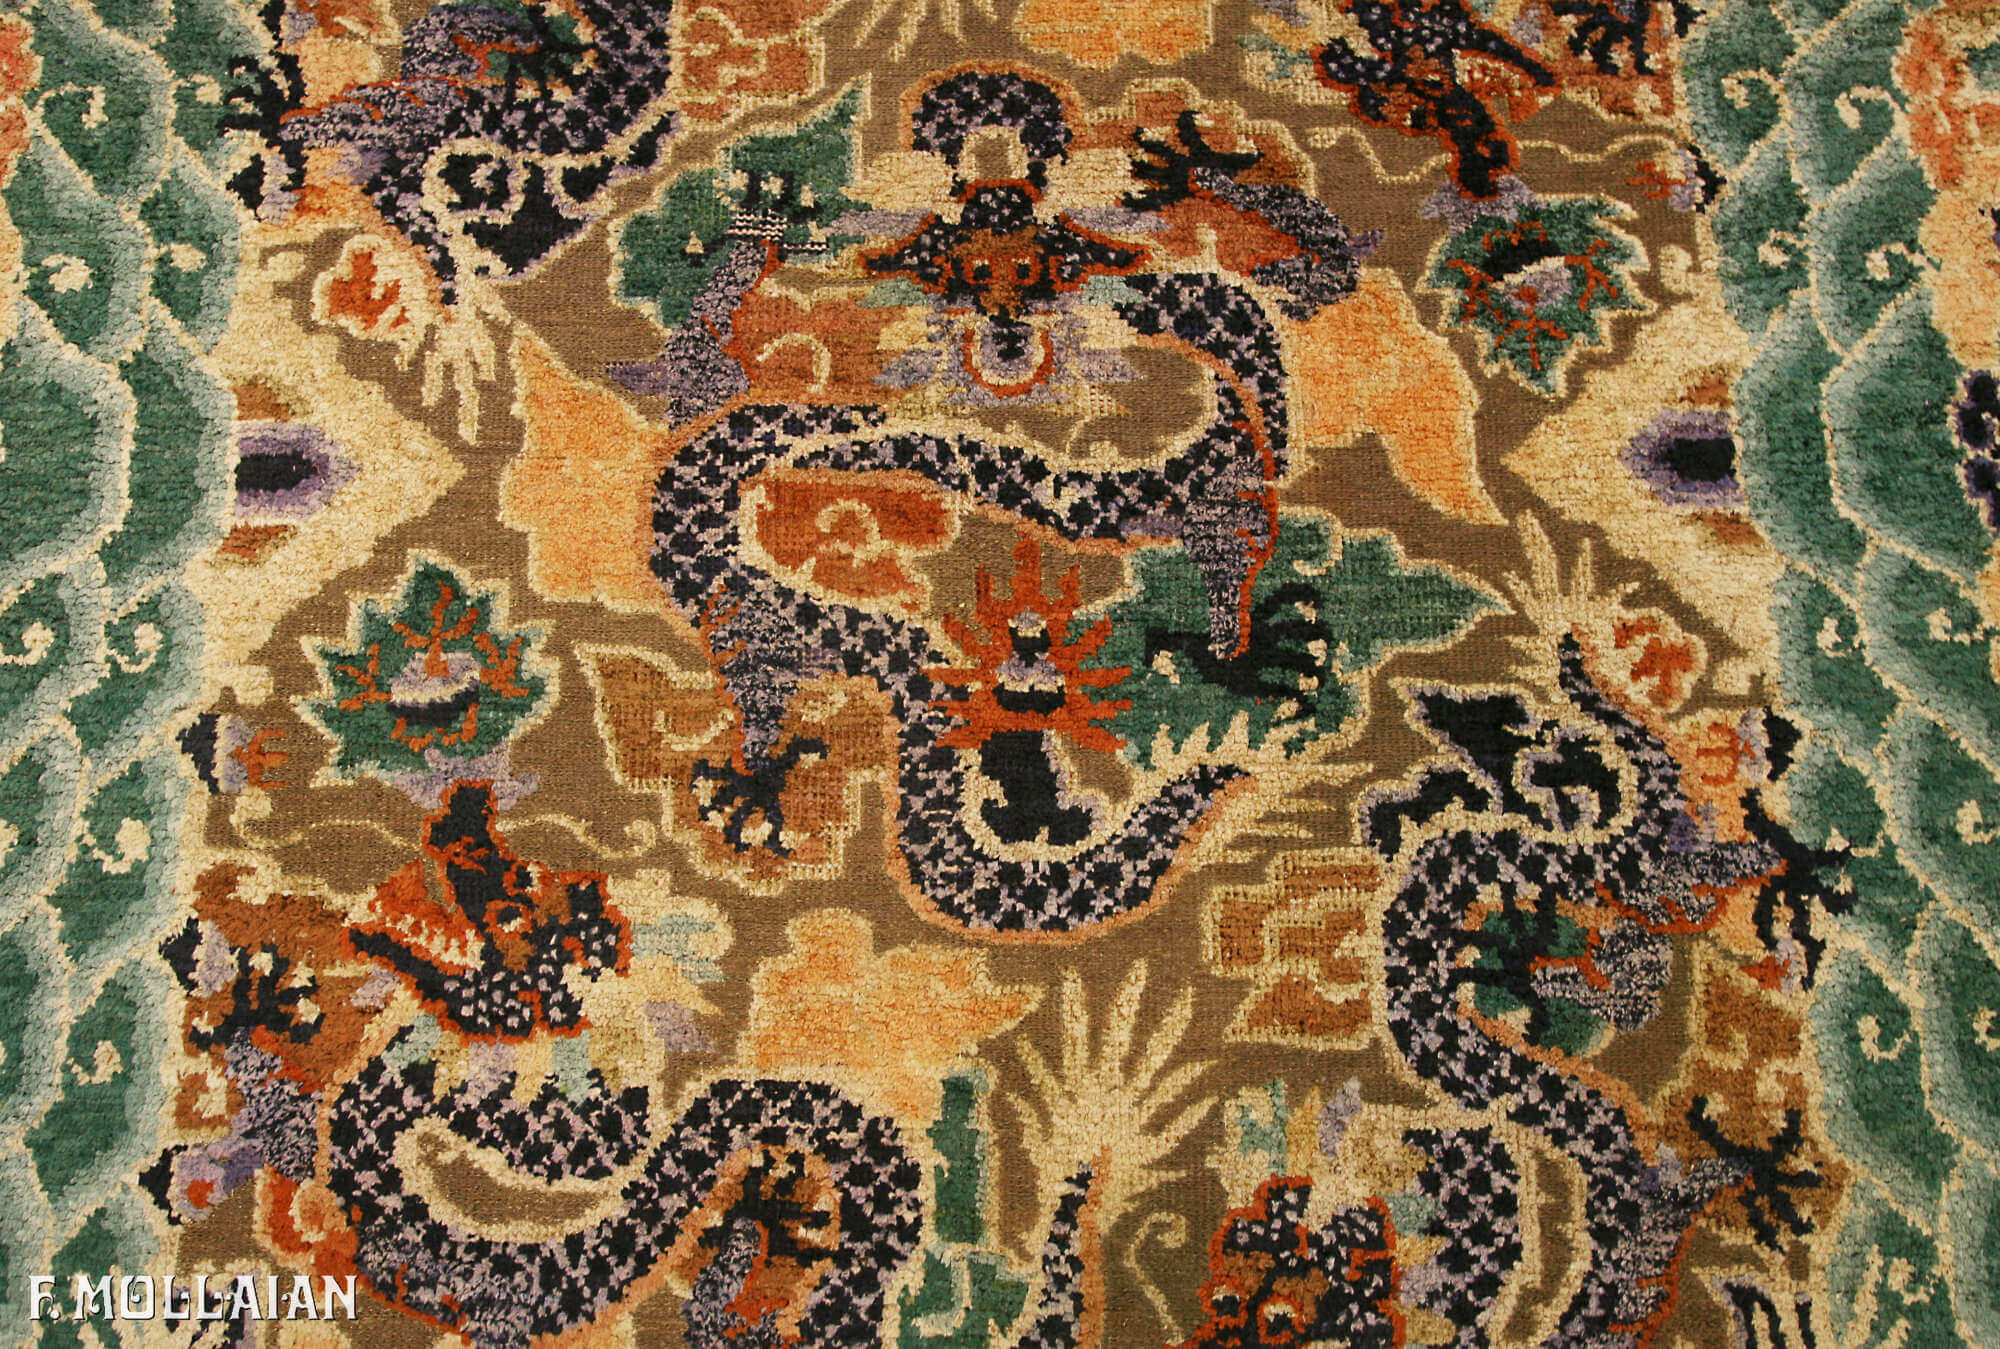 Ein seltener antiker chinesischer Seiden- und Metallteppich aus dem Kaiserpalast n°:80095193